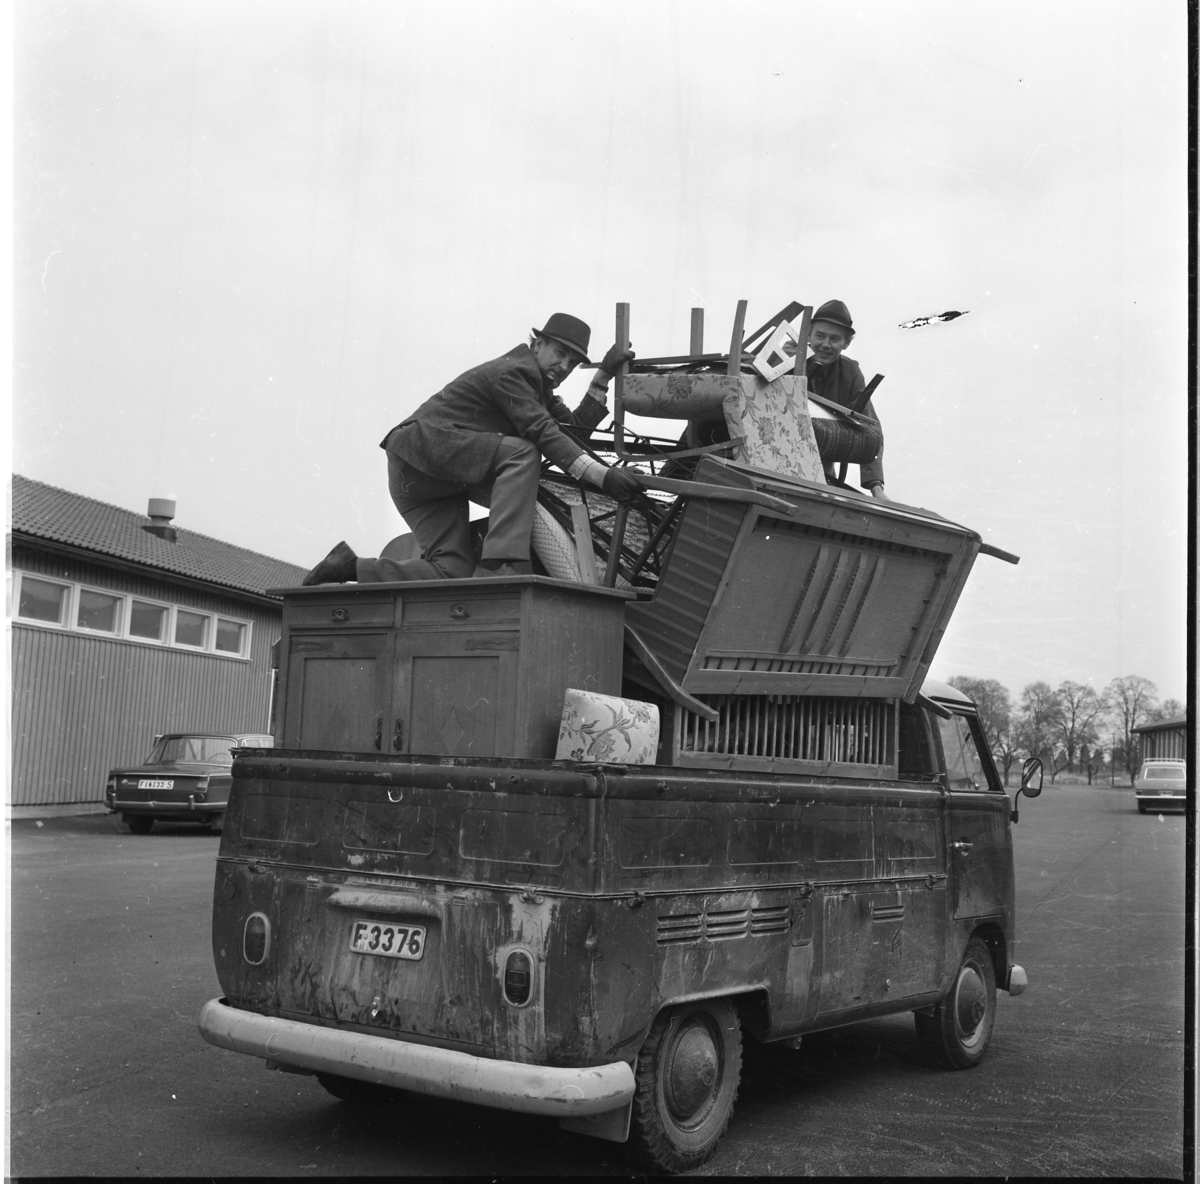 En Volkswagen pickup fullt lastad med olika möbler och högst upp två män som packar. De står möjligen på Ribbaskolans gård.